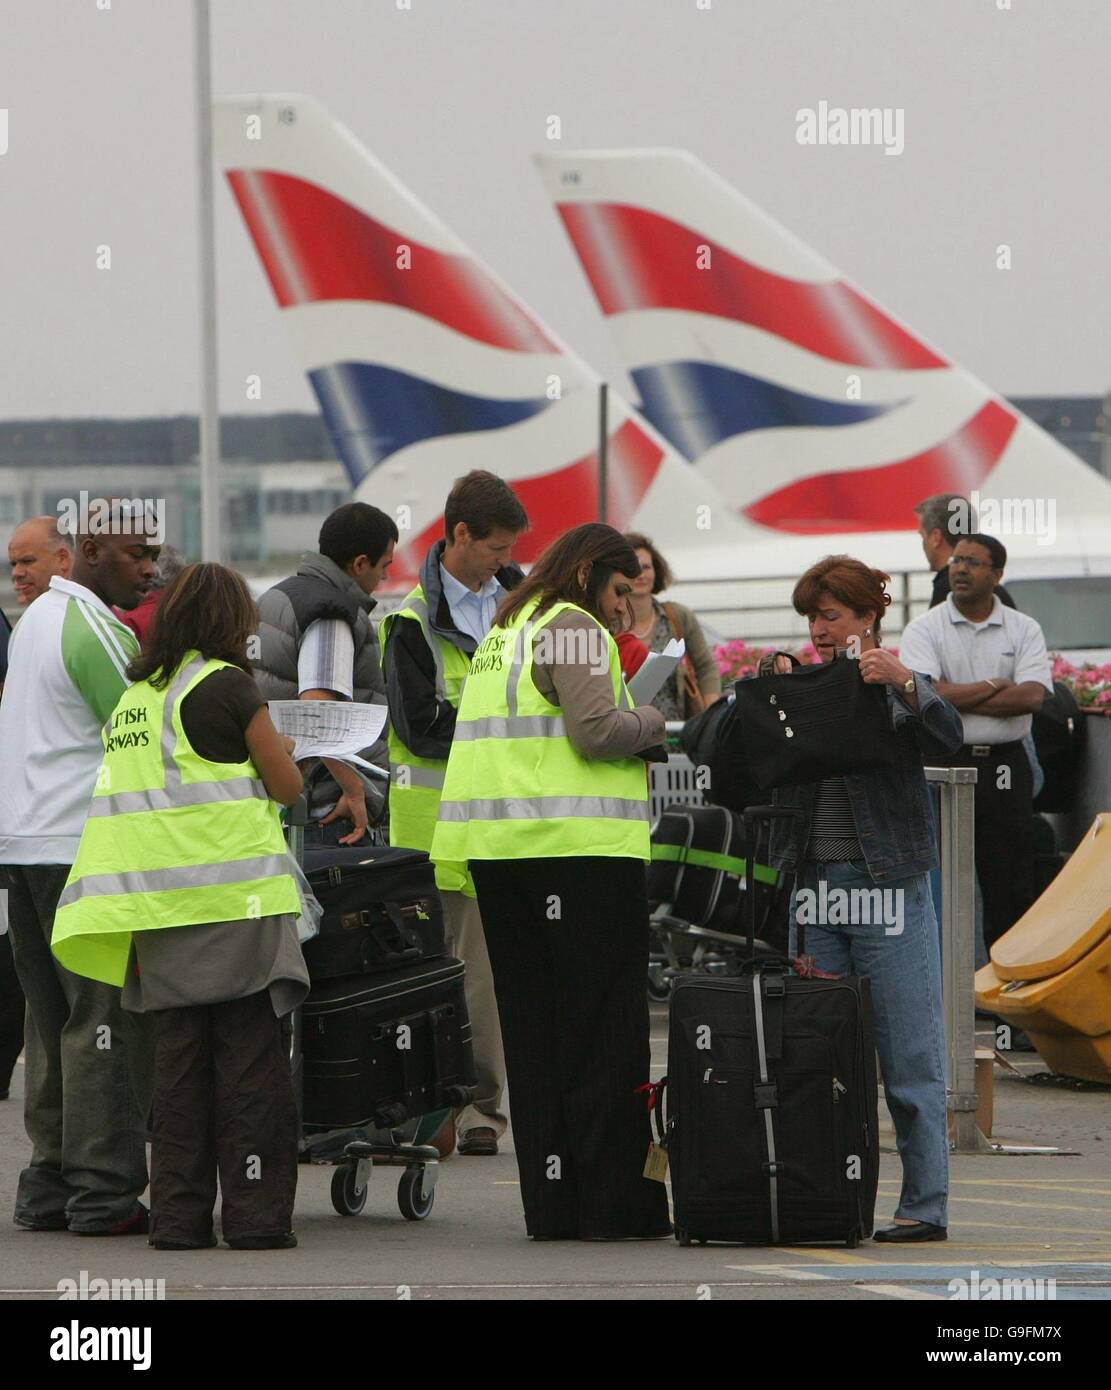 I passeggeri al di fuori del Terminal 4 dell'aeroporto di Heathrow, dove le cose stavano lentamente tornando alla normalità oggi, poiché le misure di sicurezza introdotte dopo le ondate anti-terrore della settimana scorsa sono state ridotte. Foto Stock